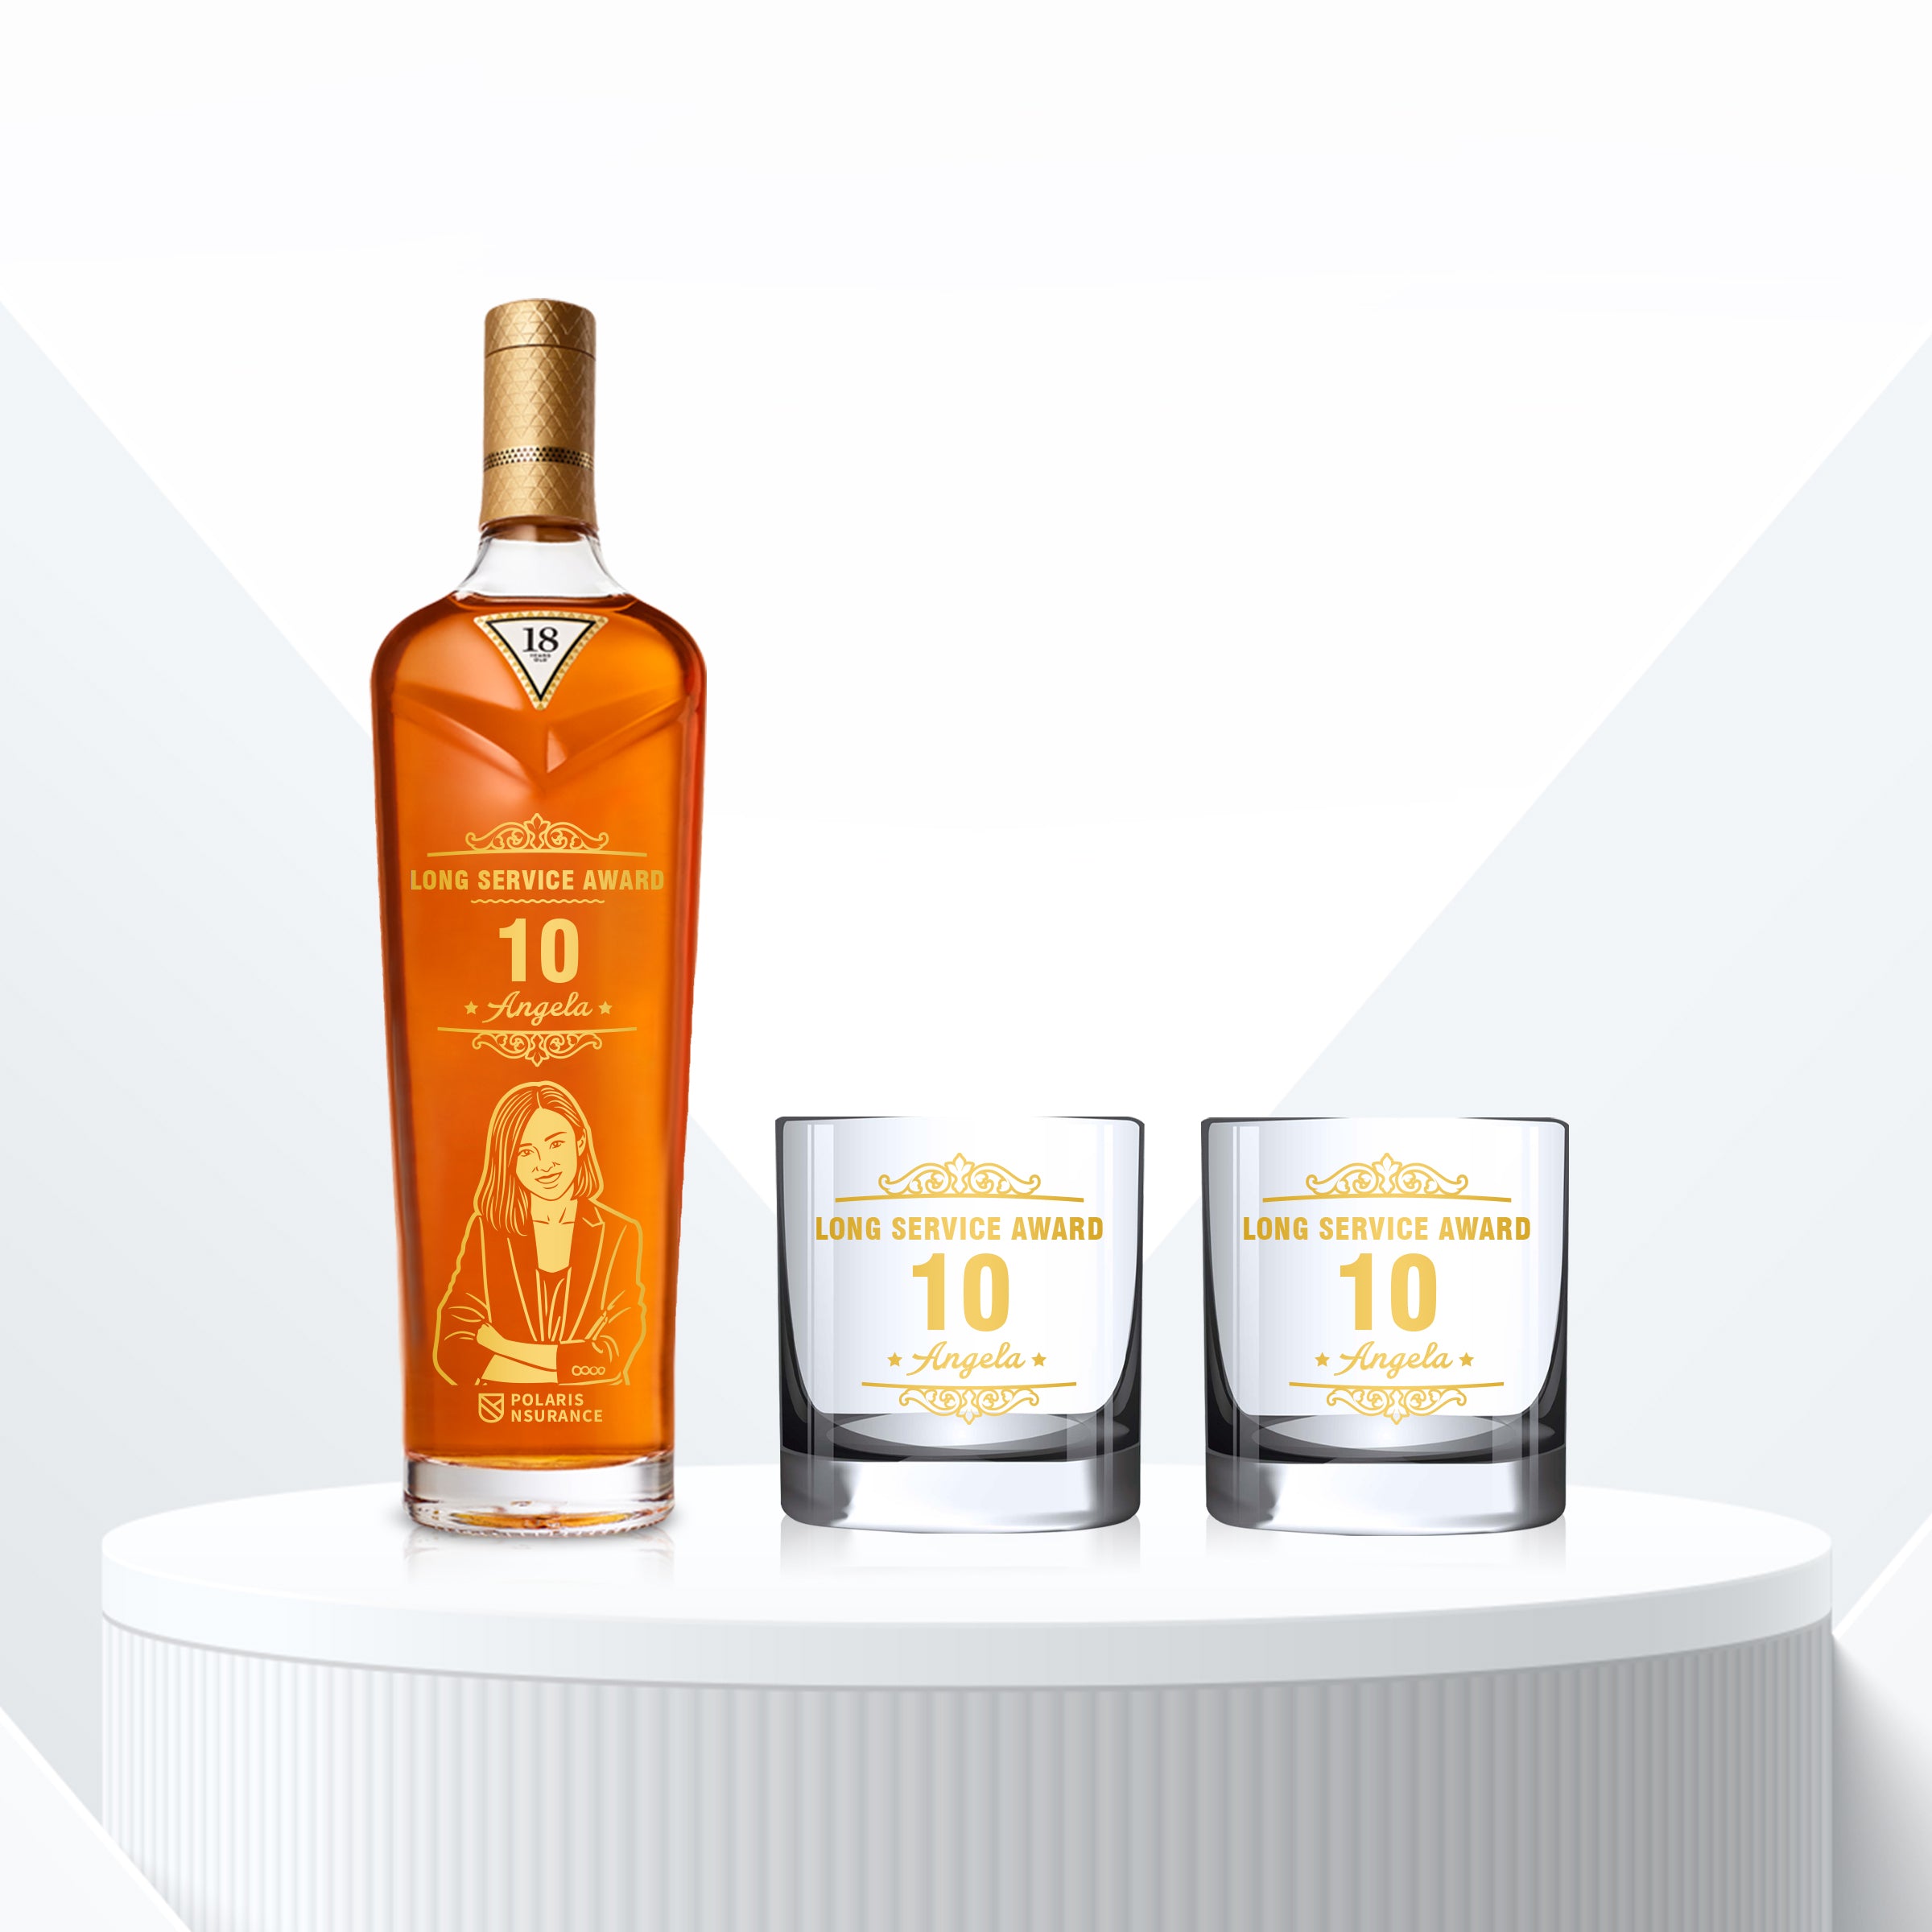 企業高端禮品 定制麥卡倫雪莉桶18年威士忌Macallan Sherry Oak 18 2021& Bottega Whisky Glasses Gift Set with Engraving - Design Your Own Wine